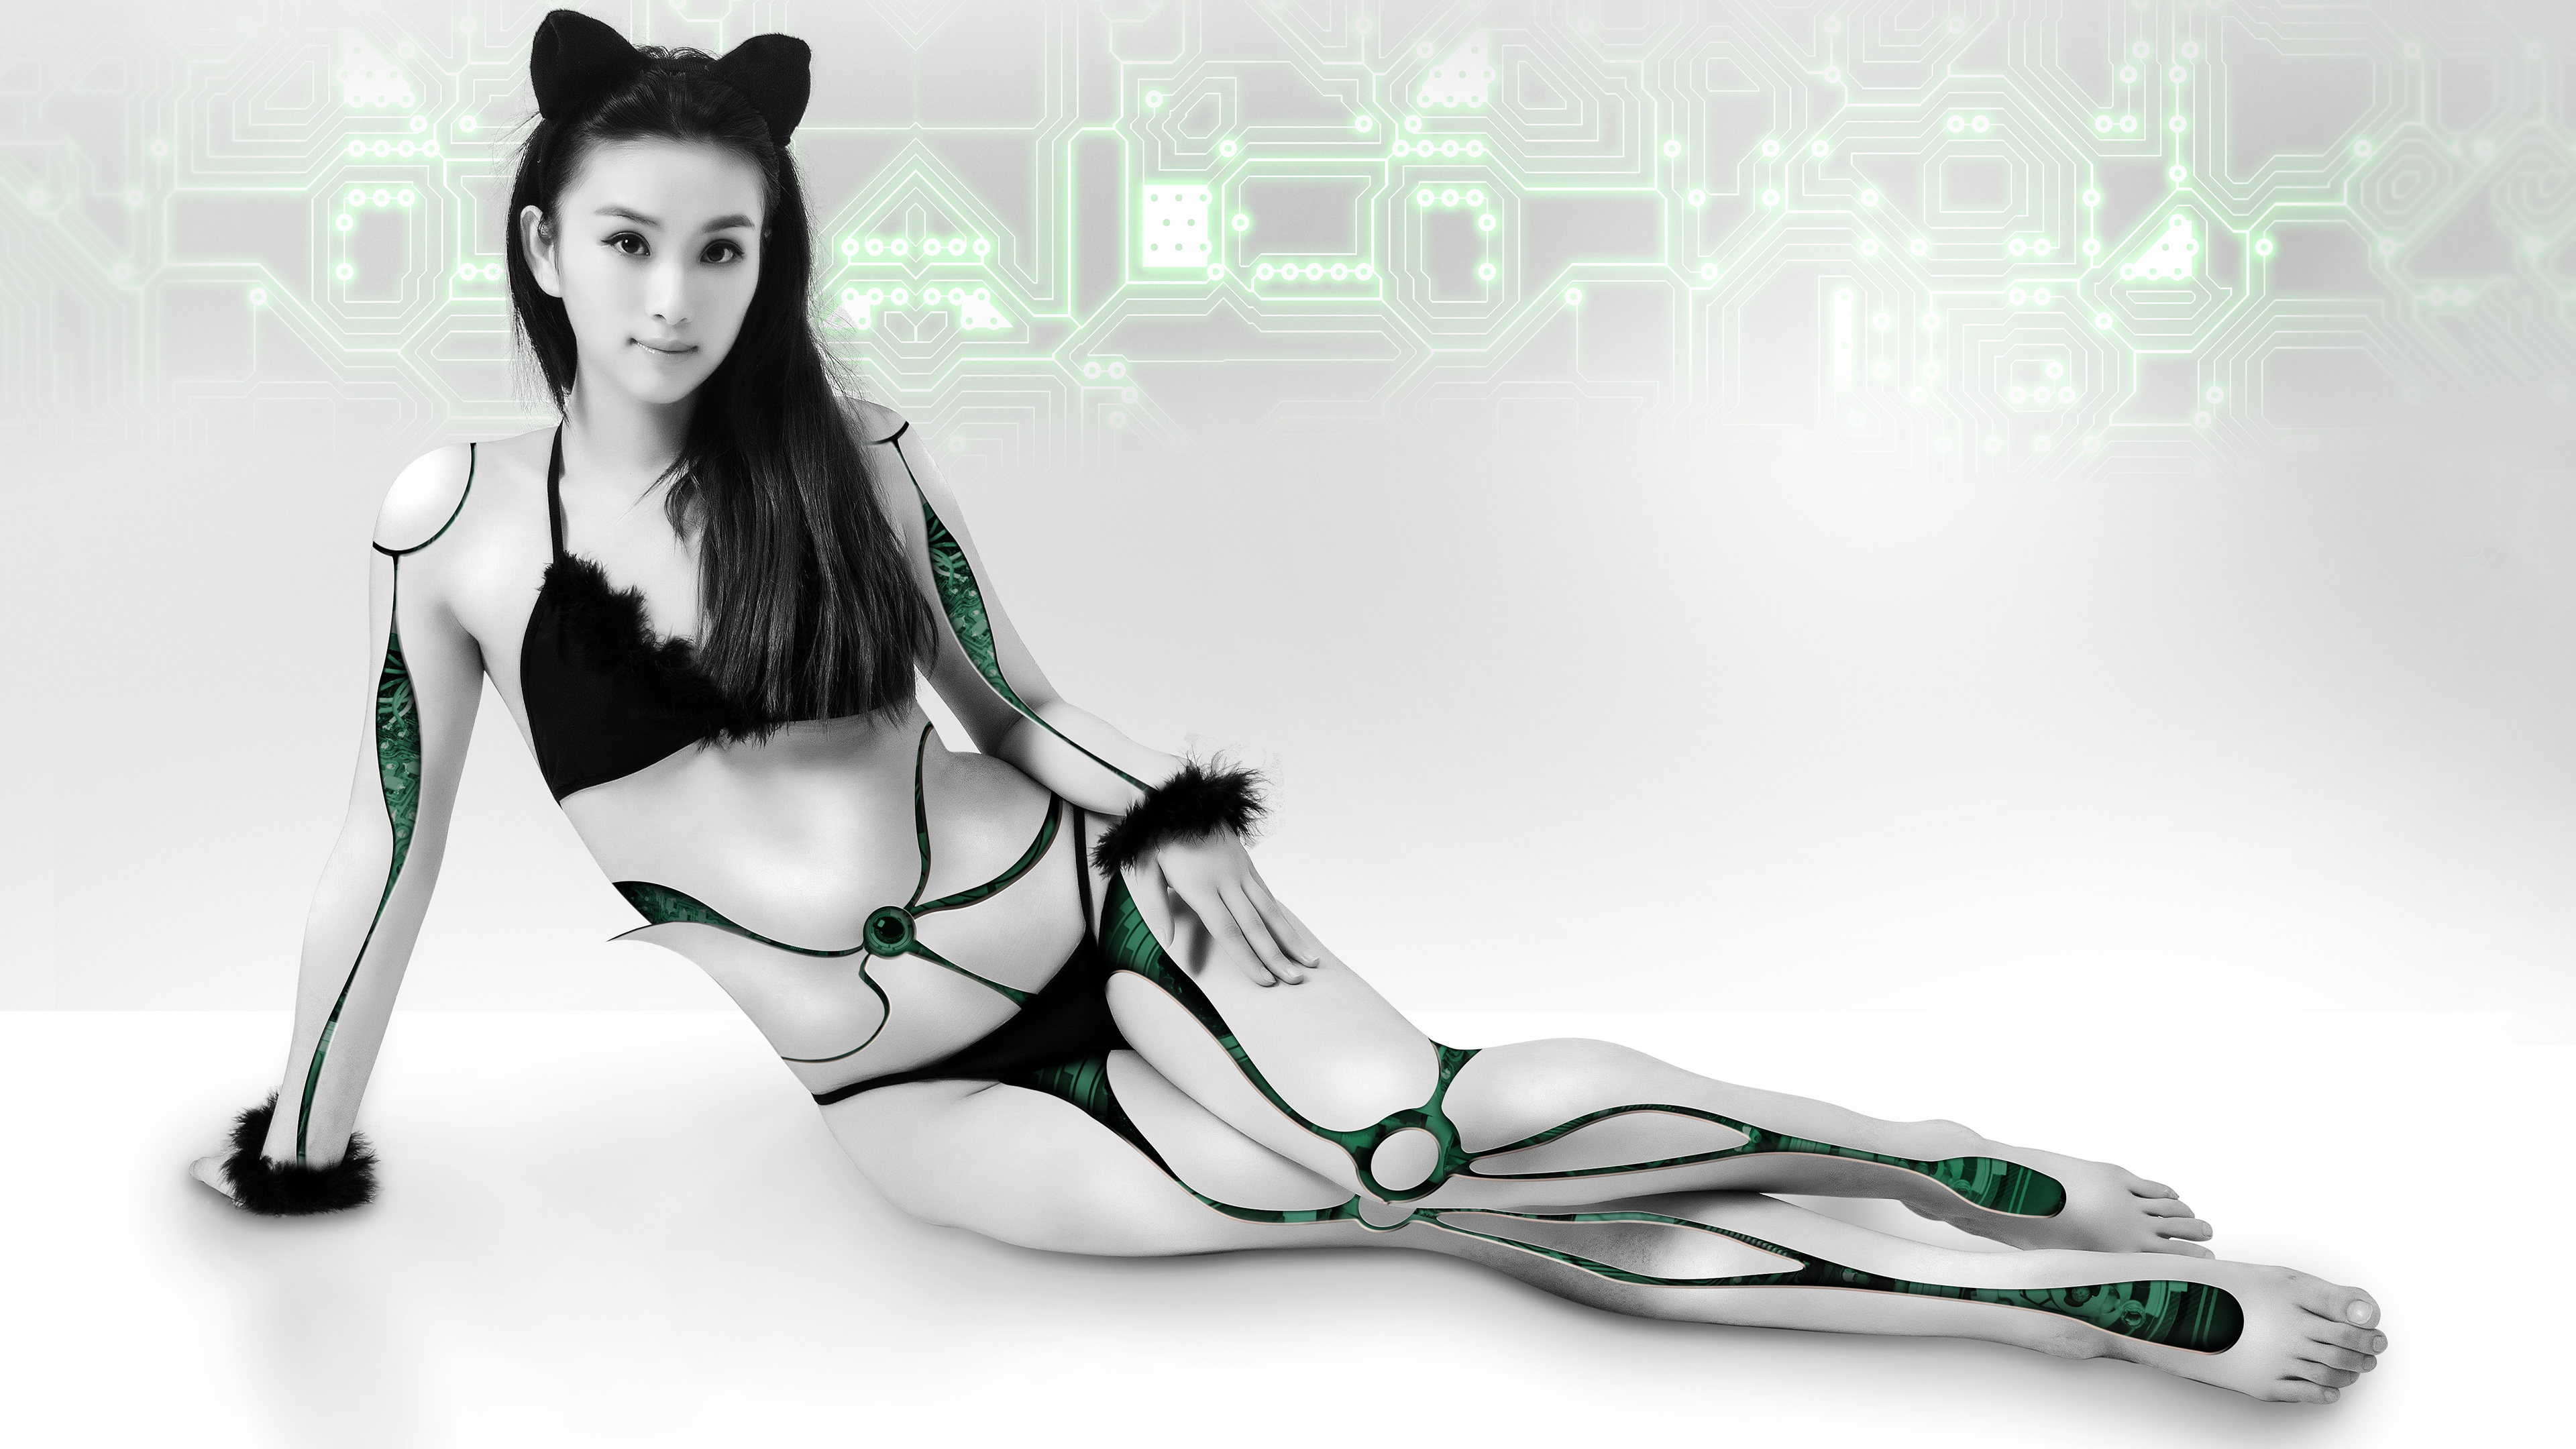 Bionic Catwoman 4K Wallpaper 3840 x 2160 px